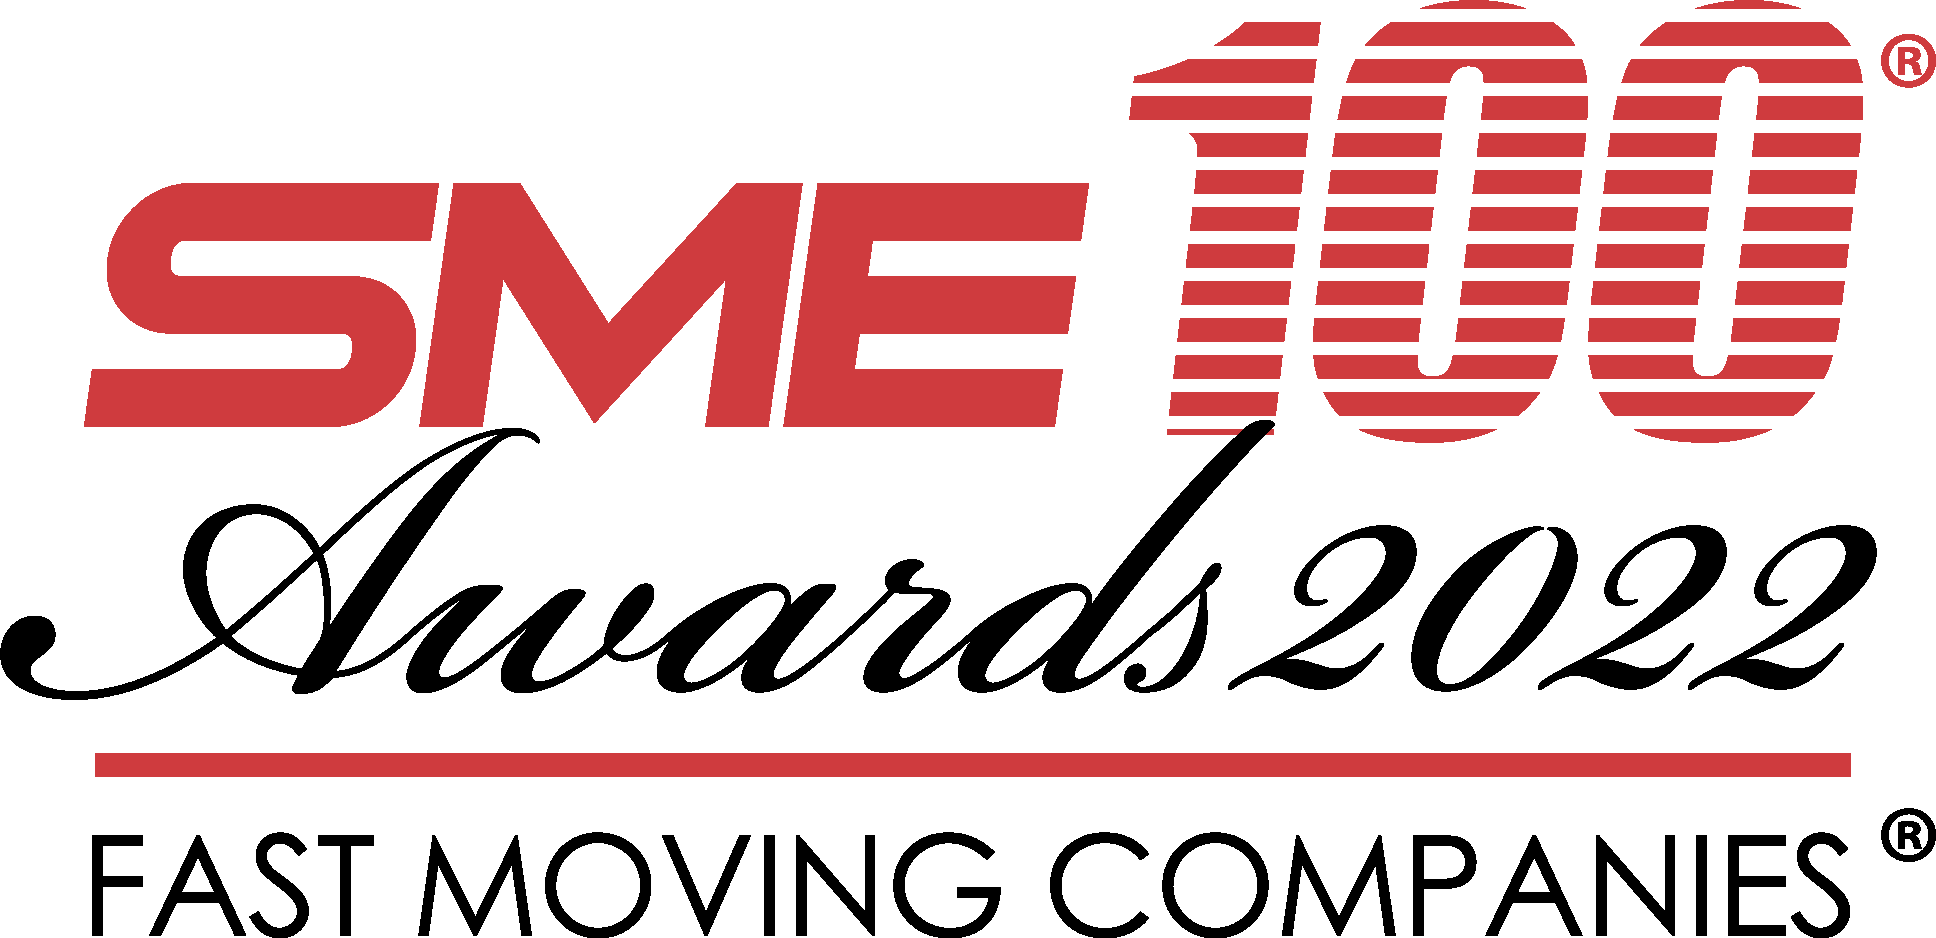 SME100 Award